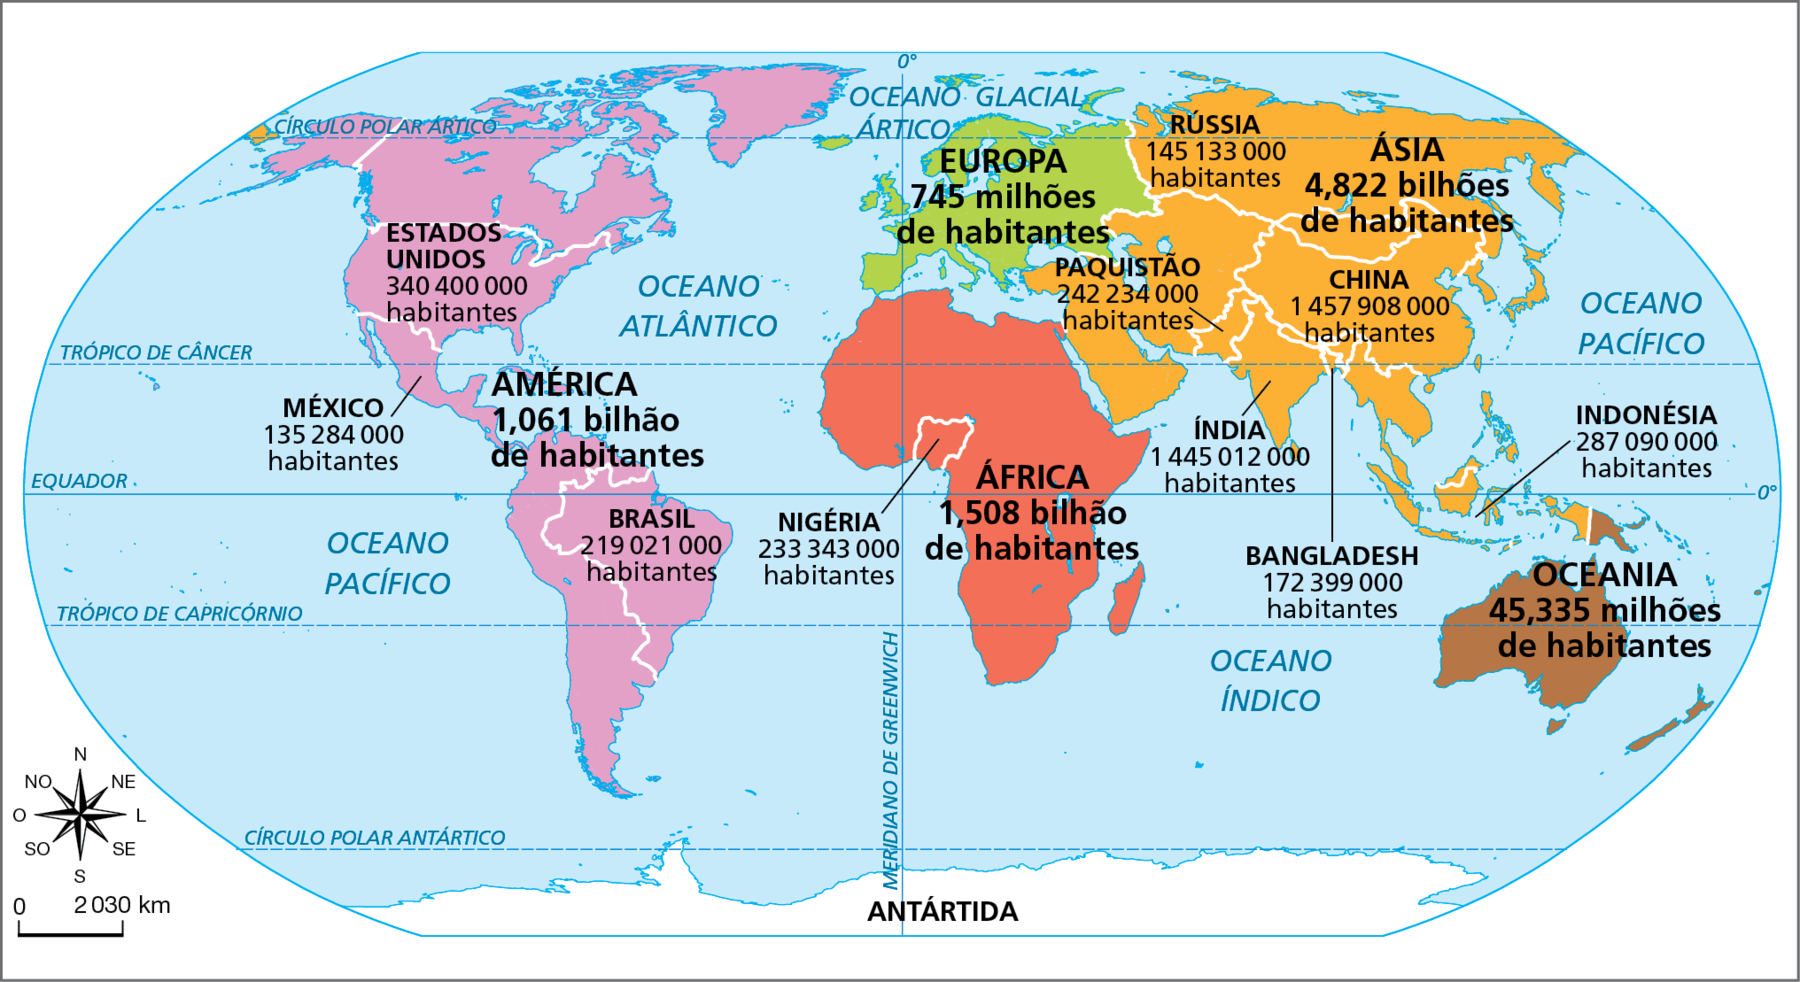 Mapa. Mundo: população estimada por continente e os dez países mais populosos – 2025. Planisfério representando os números estimados de habitantes por continente e para os dez países com as maiores populações. 
População por continente: 
Ásia: 4,822 bilhões. África: 1,508 bilhão. América: 1,061 bilhão. Europa: 745 milhões. Oceania: 45,335 milhões. 
Dez países mais populosos: 
China: 1.457.908.000. Índia: 1.445.012.000. Estados Unidos: 340.400.000. Indonésia: 287.090.000. Paquistão: 242.234.000. Nigéria: 233.343.000. Brasil: 219.021.000. 
Bangladesh: 172.399.000. Rússia: 145.133.000. México: 135.284.000.
Na parte inferior, à esquerda, rosa dos ventos e escala de 0 a 2.030 quilômetros.